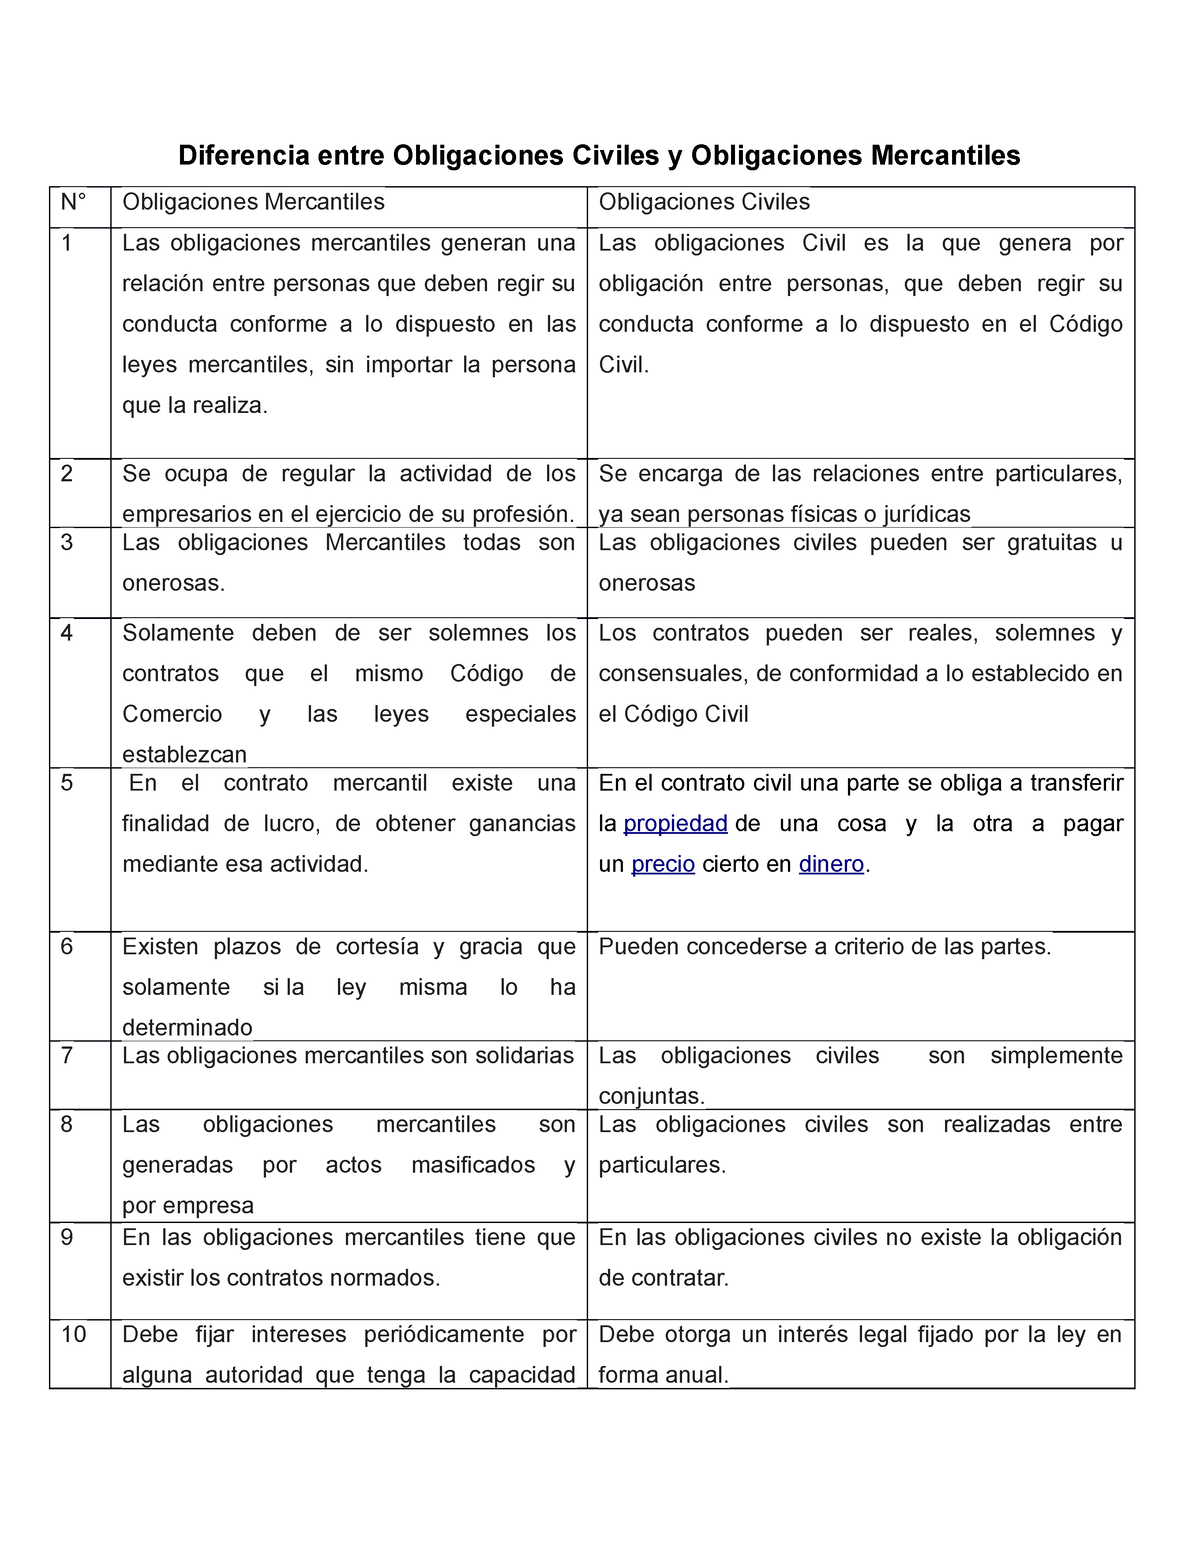 Doc Cuadro Comparativo Contratos Y Obligaciones Cuadro Comparativo